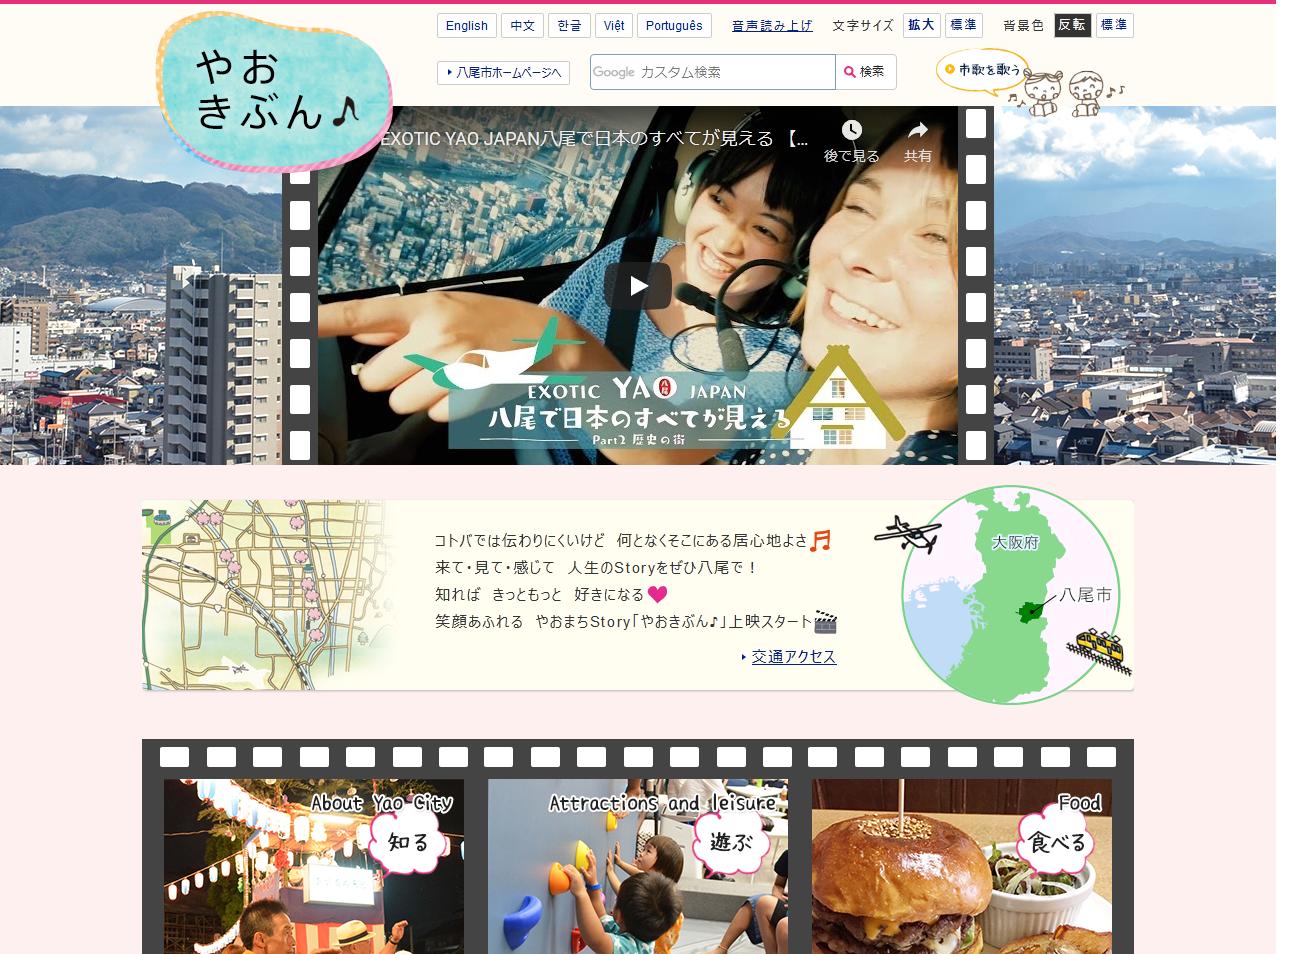 八尾市役所公式ホームページサブサイトやおきぶんページキャプチャ画像